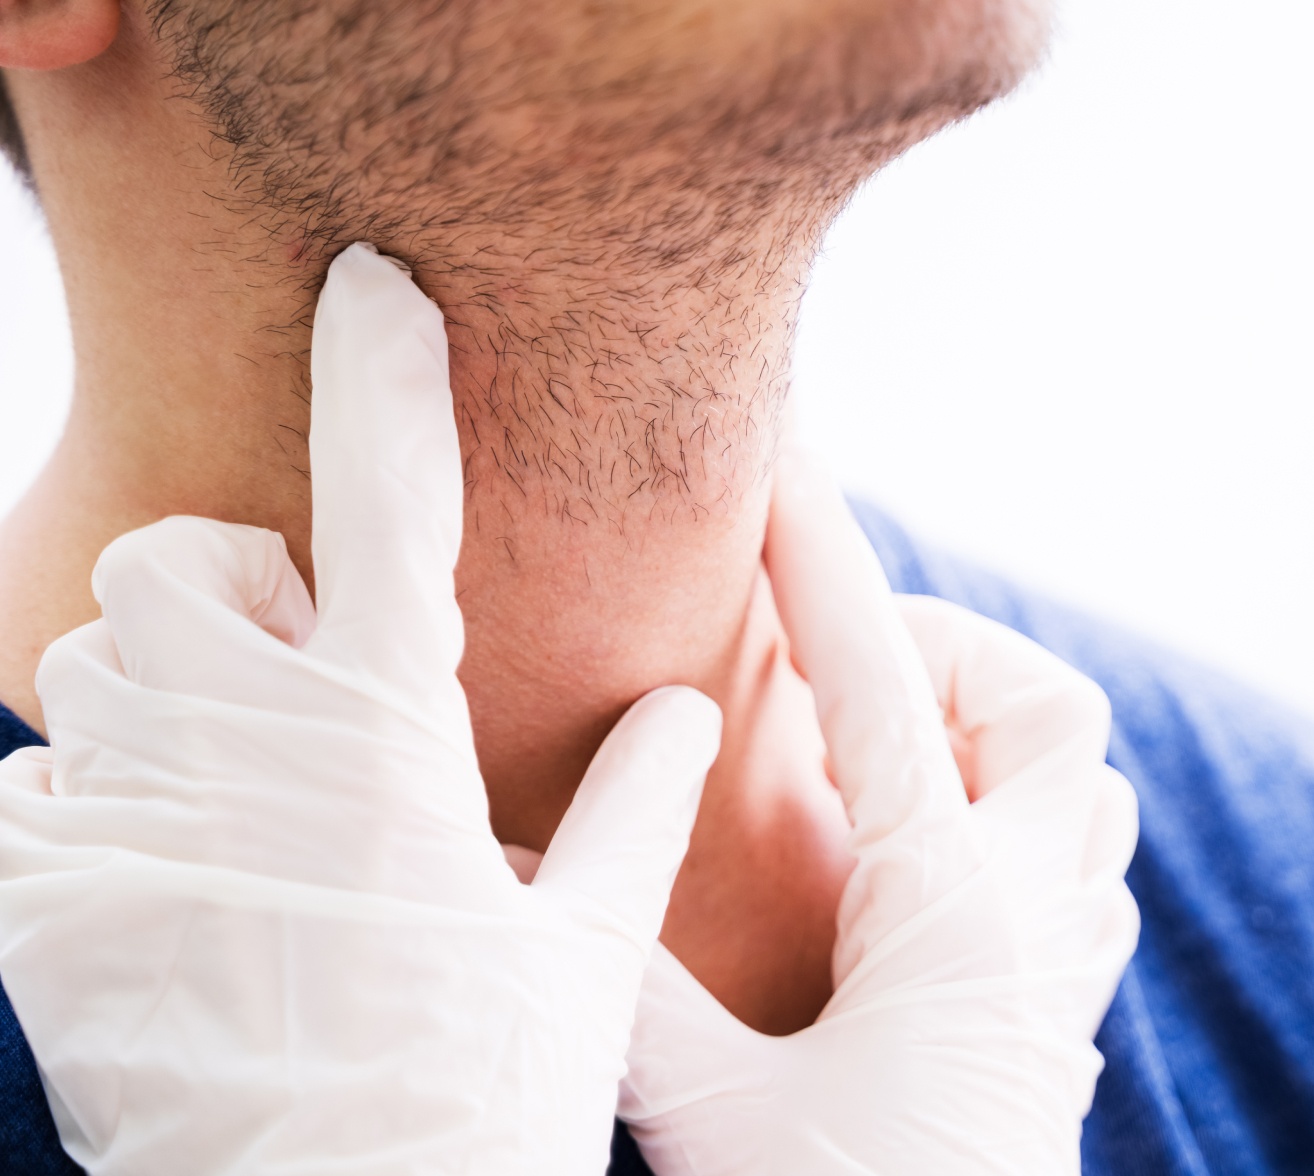 Chirurgie des glandes salivaires | chirurgien maxillo facial | Institut du visage | Bordeaux